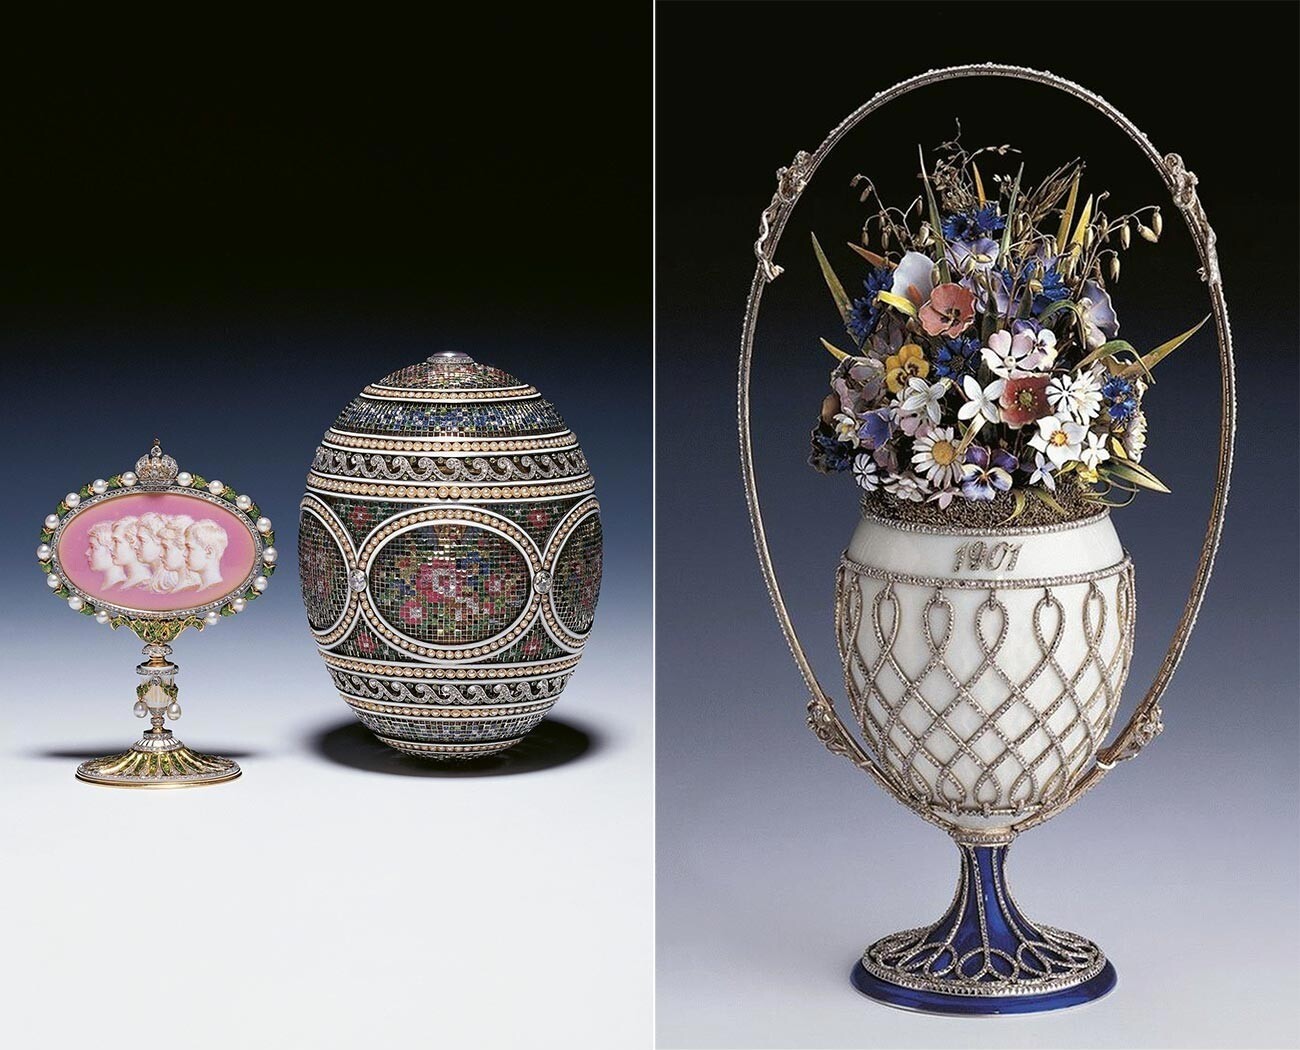 Ускршња Фабержеова јаја „Мозаик“ и „Корпа пољског цвећа“ продата су 1930-тих британској краљевској породици